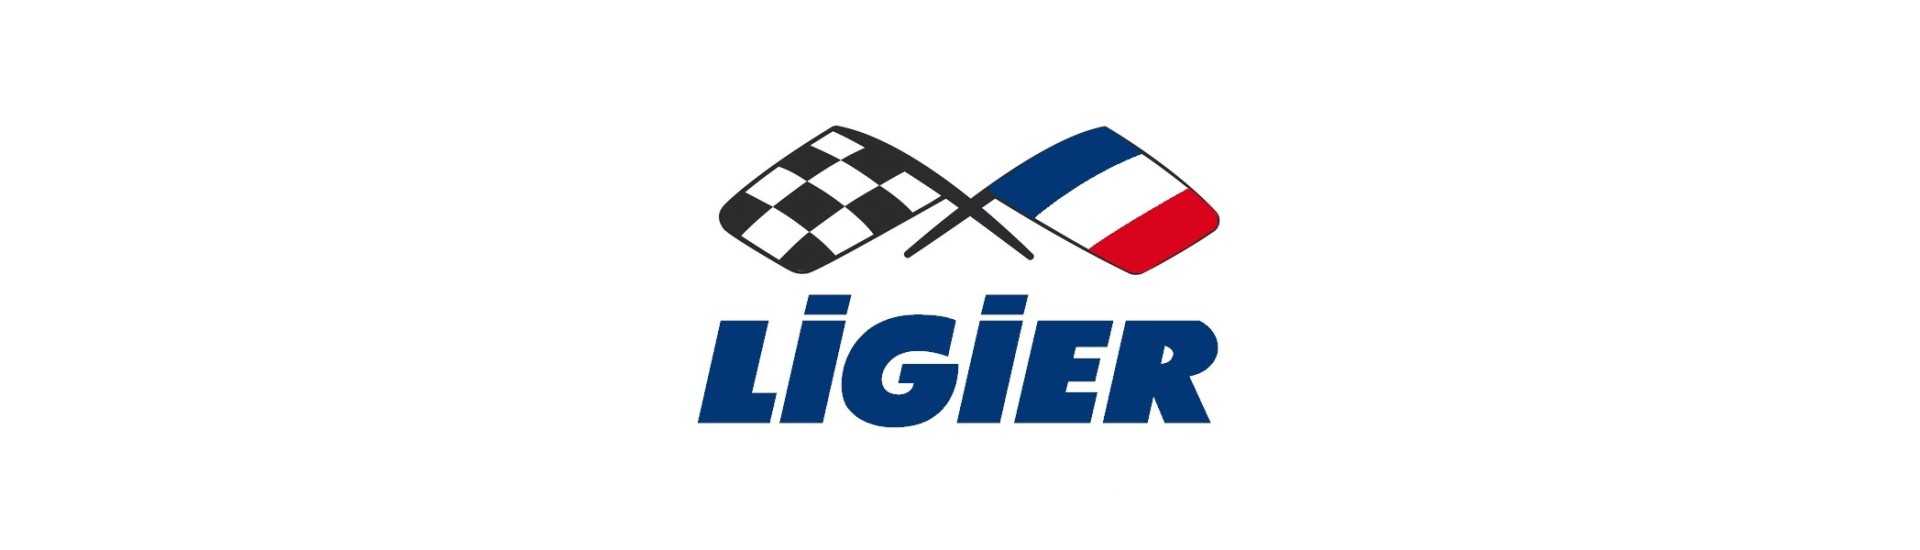 Fuja ao melhor preço para o carro sem uma permissão Ligier